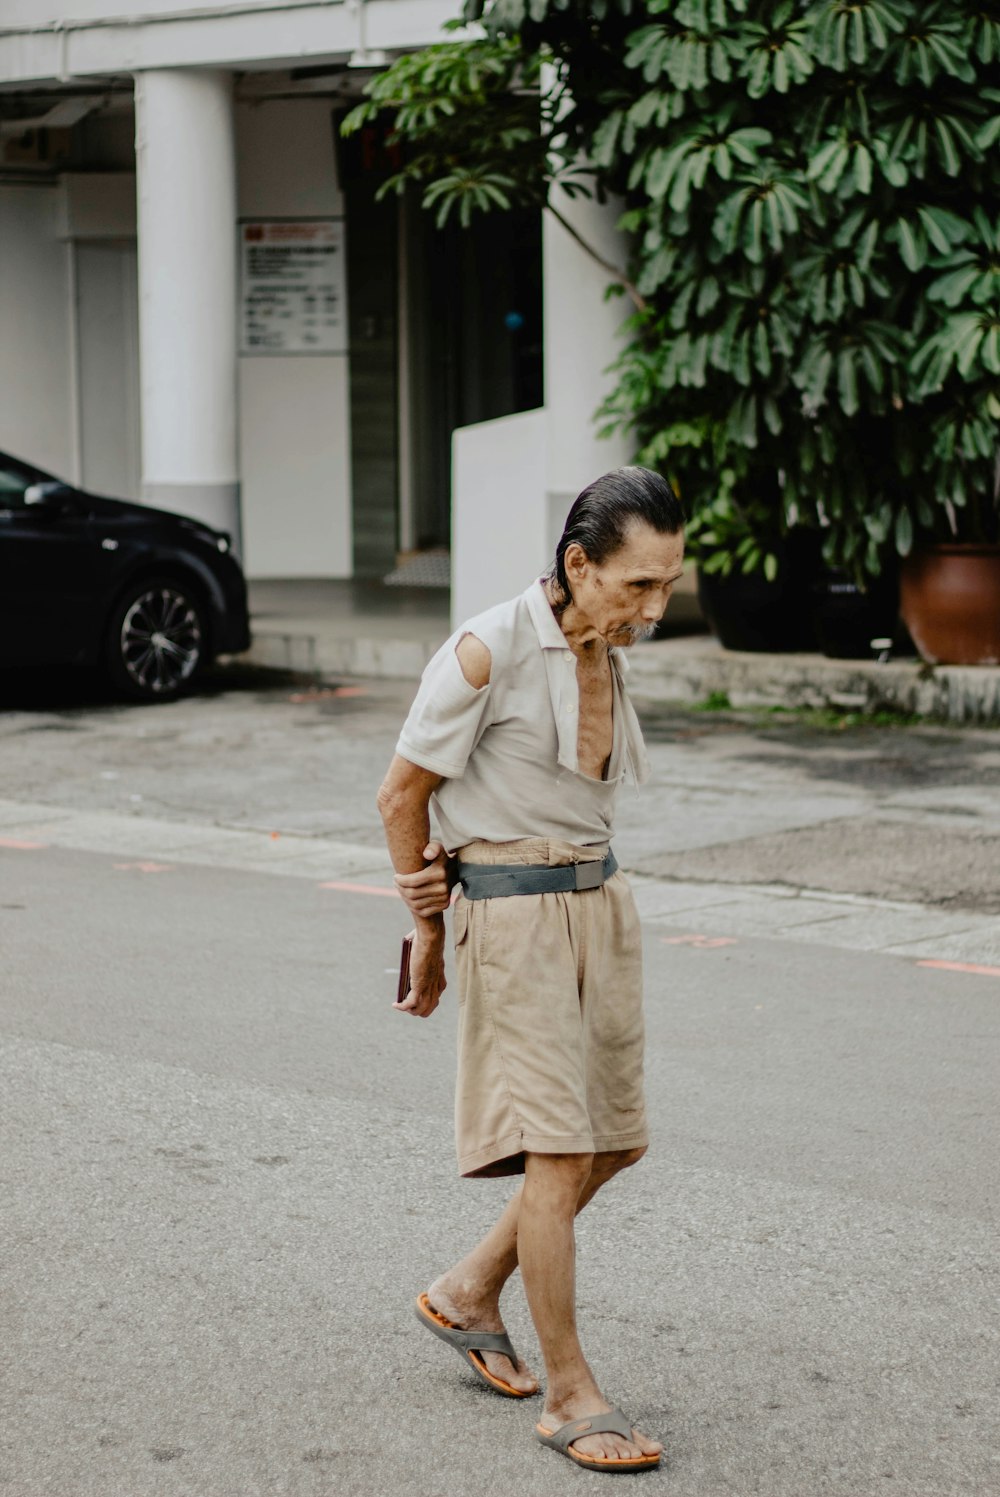 Mann in braunen Shorts steht auf Betonstraße